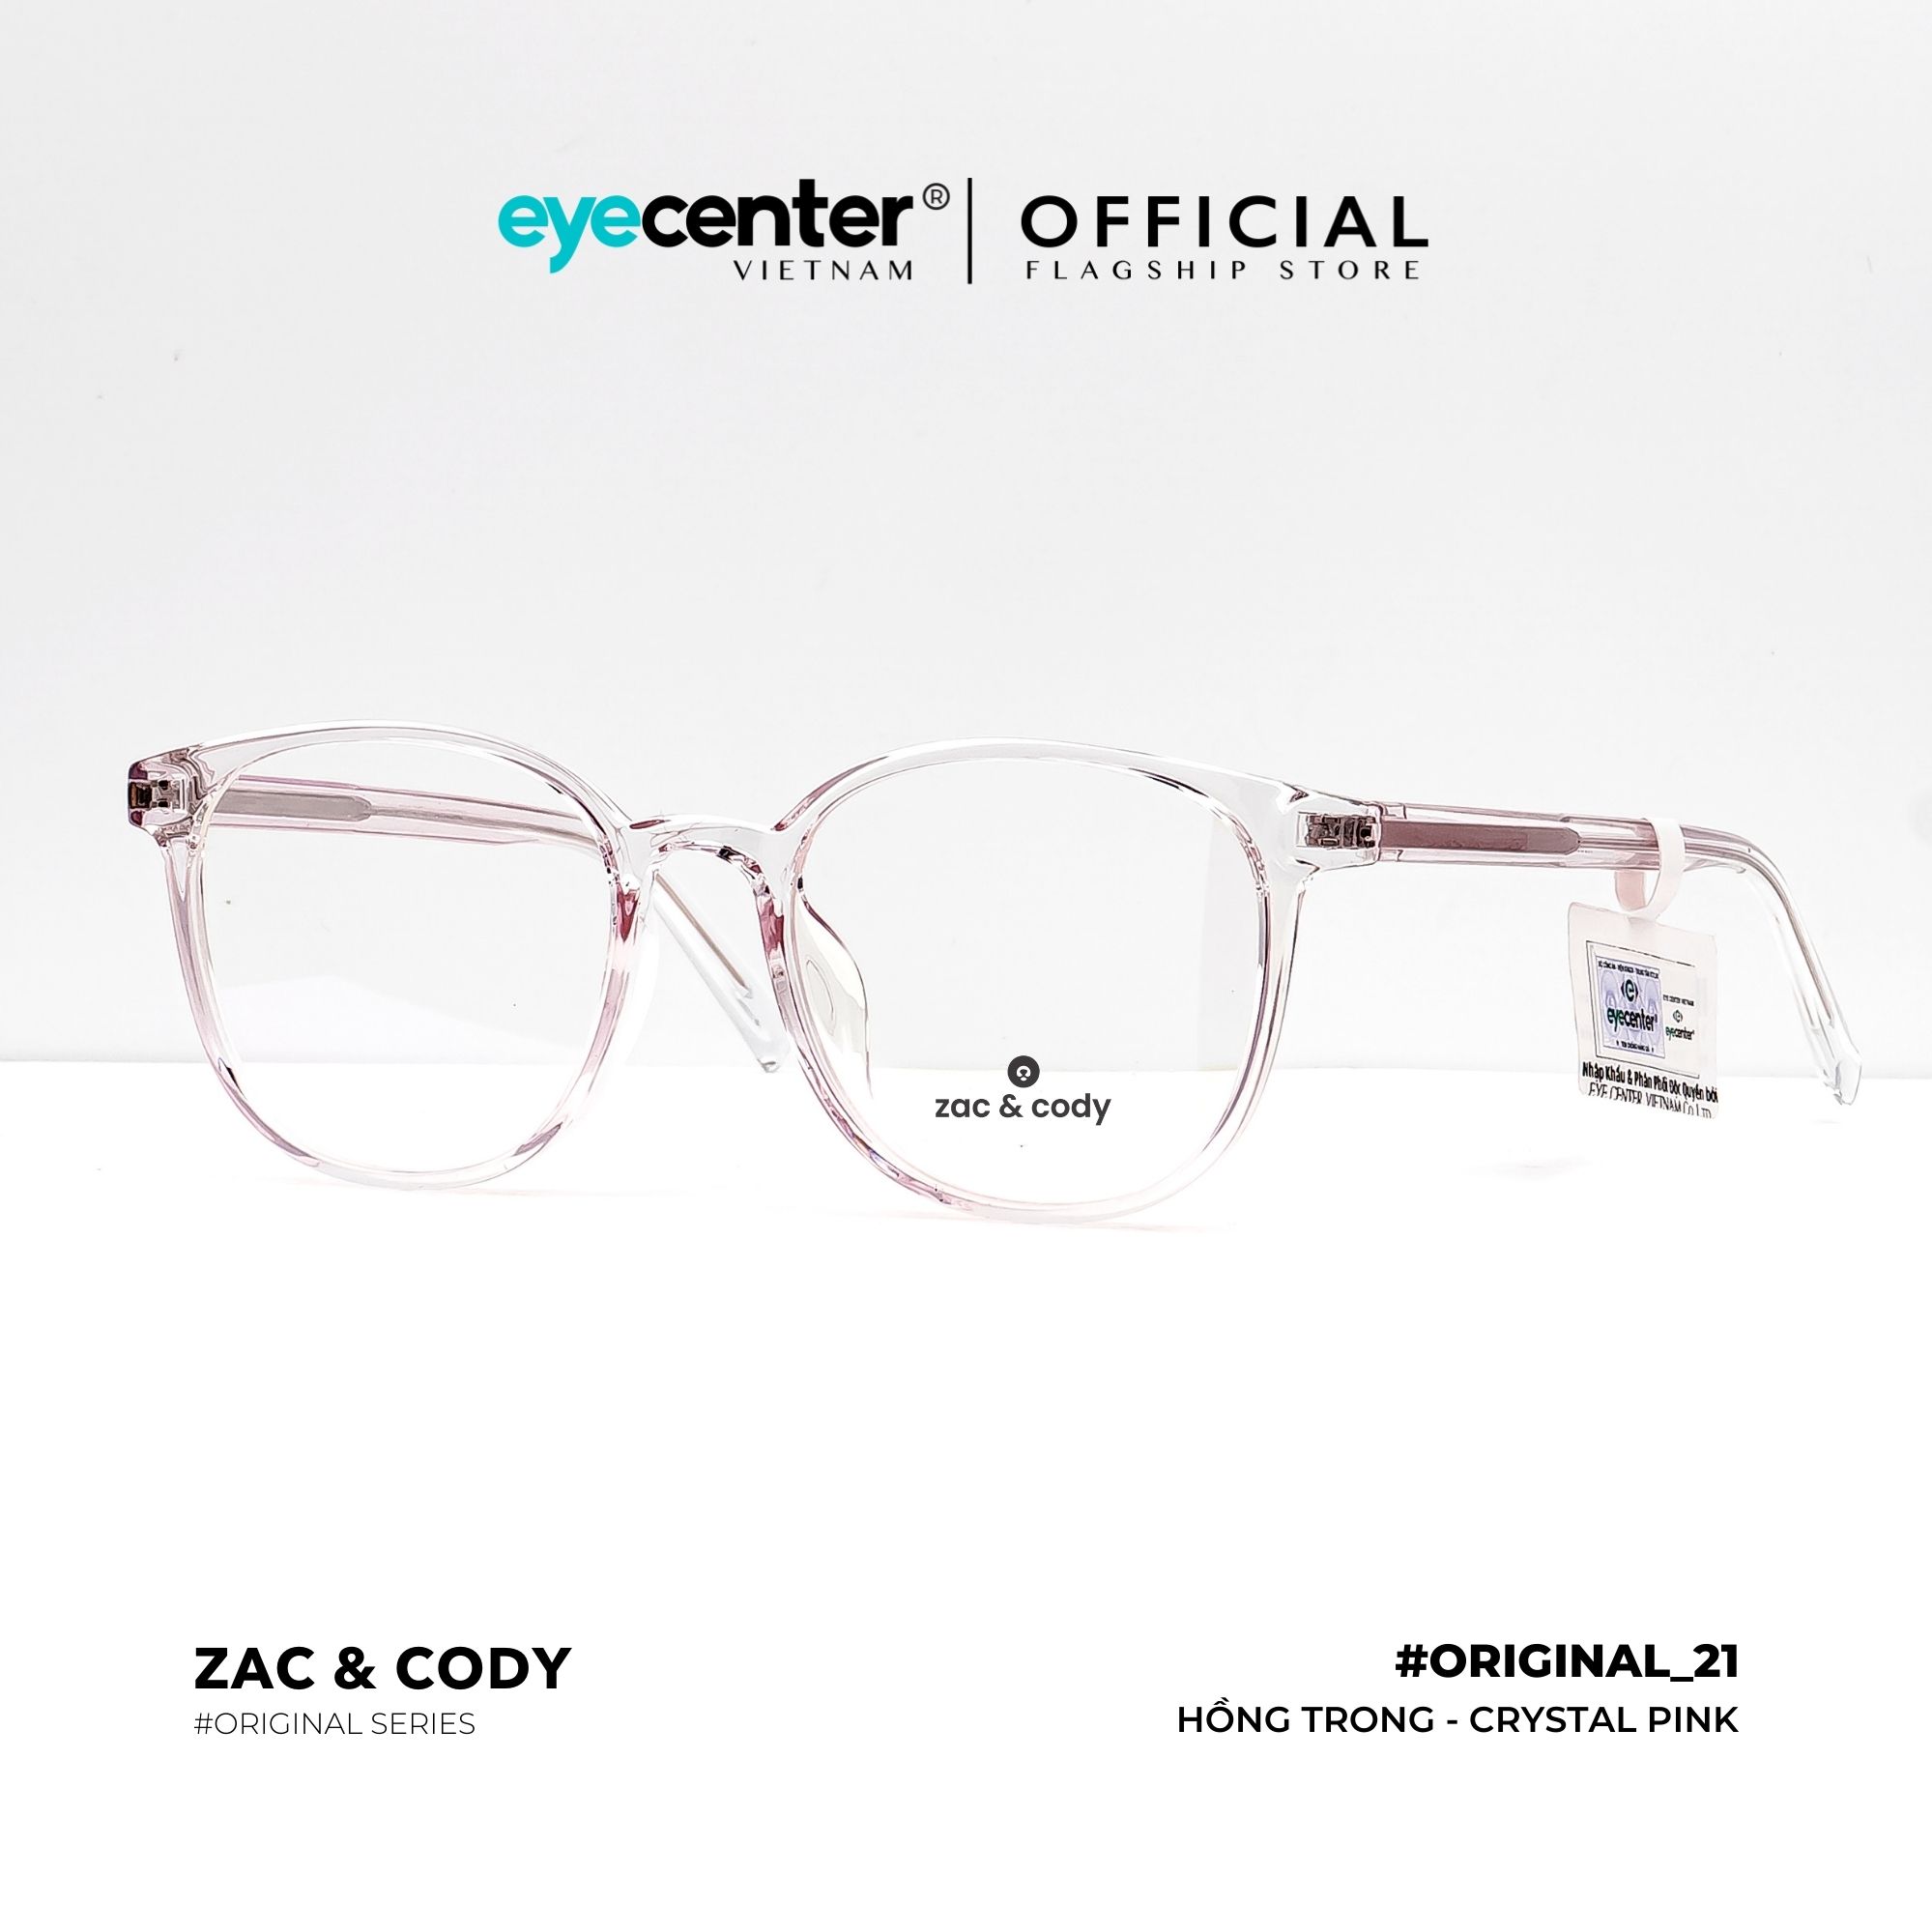 Gọng kính cận nam nữ B21-S chính hãng ZAC CODY lõi thép chống gãy cao cấp nhập khẩu by Eye Center Vietnam